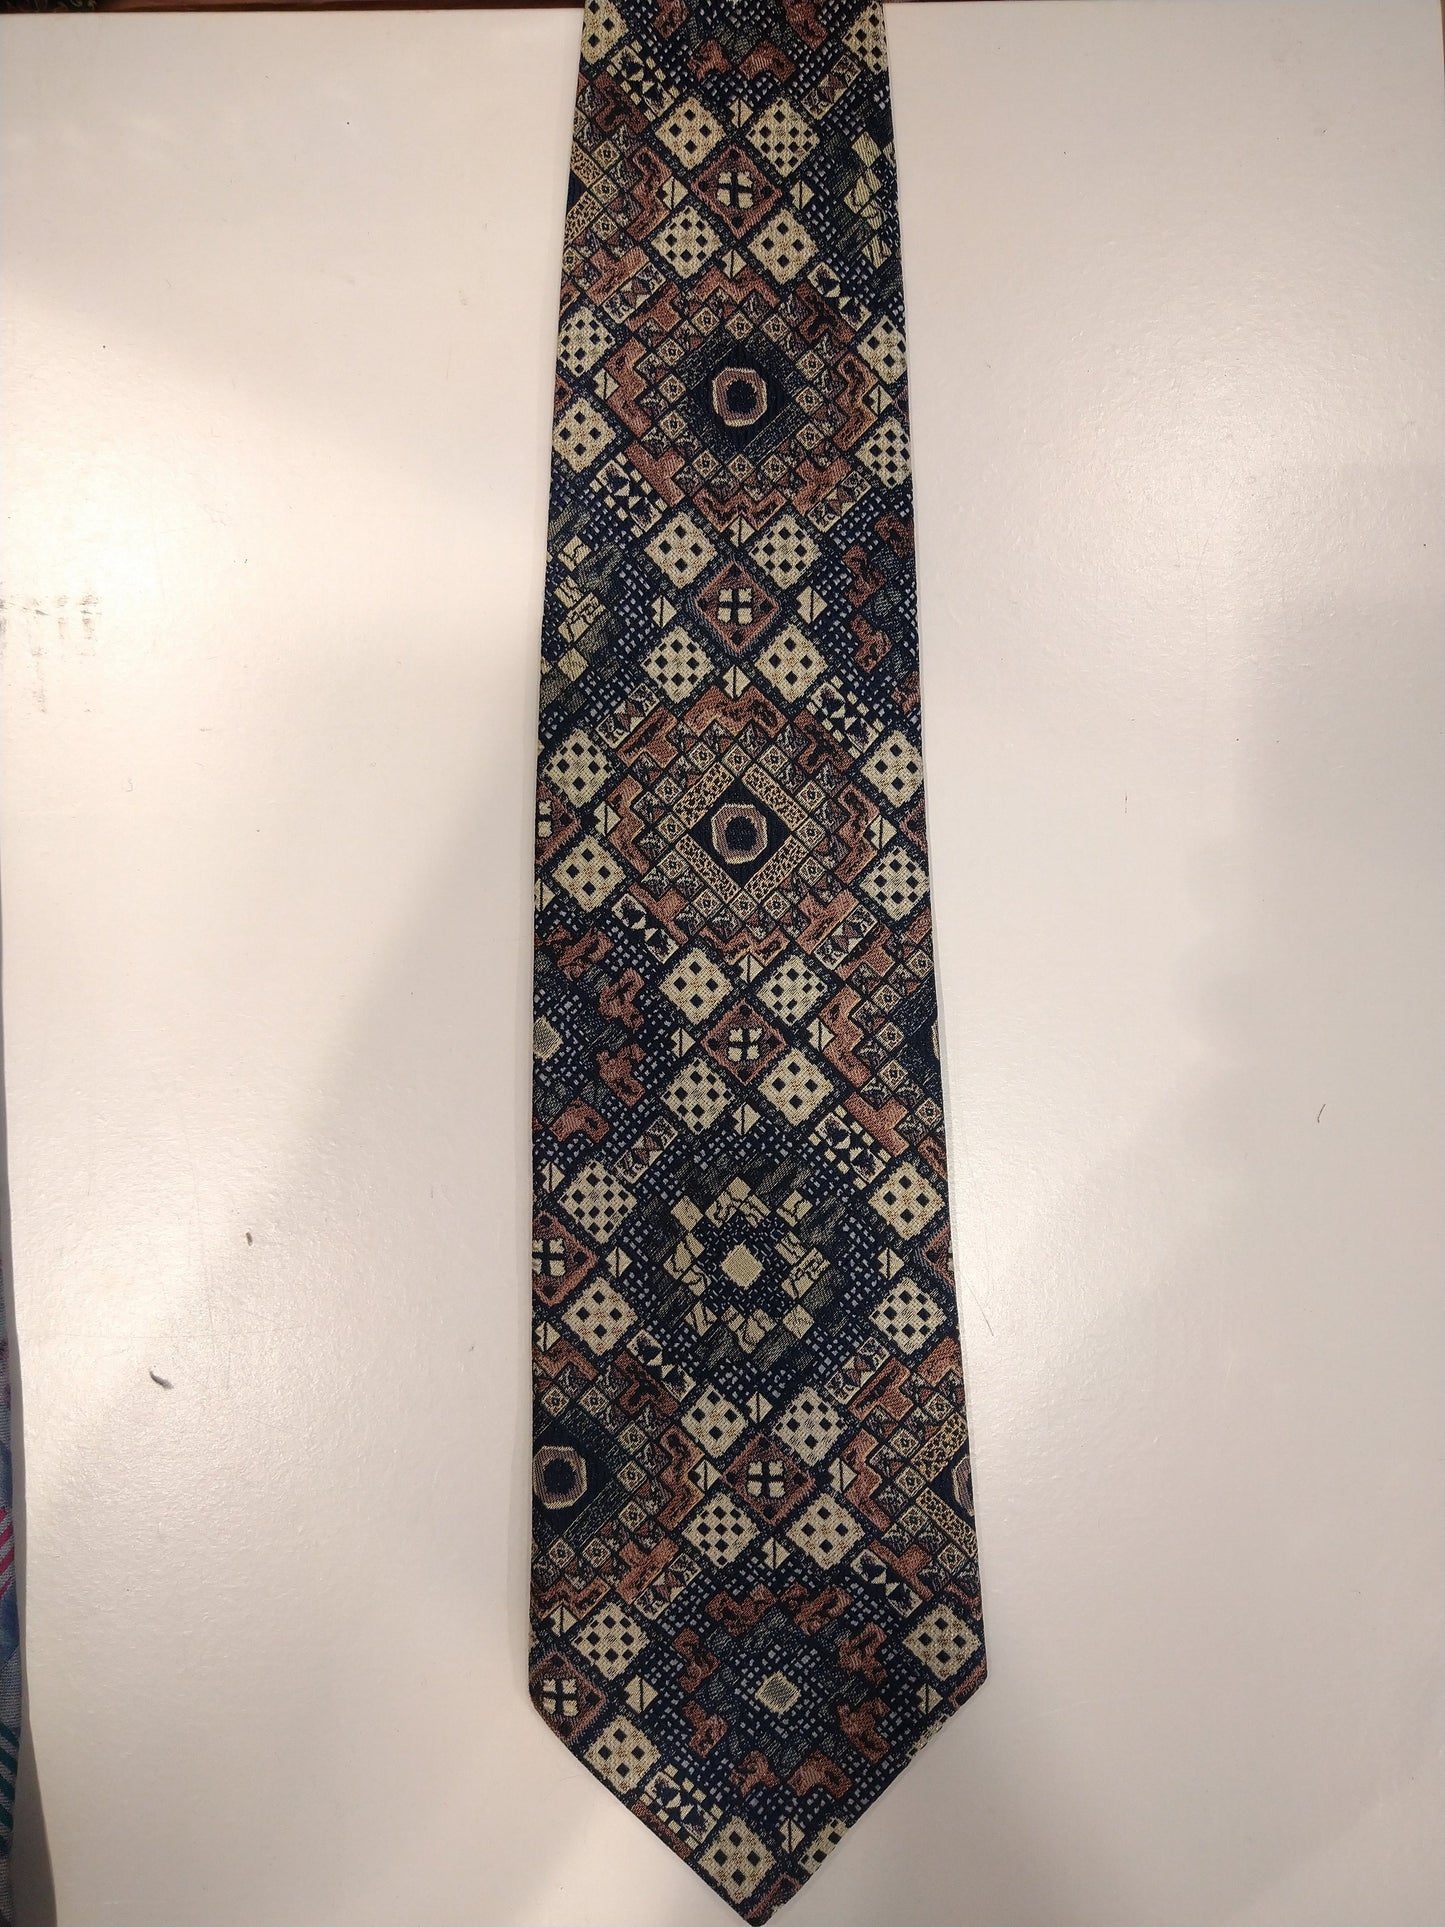 Vintage Claudy polyester tie. Nice vintage motif.